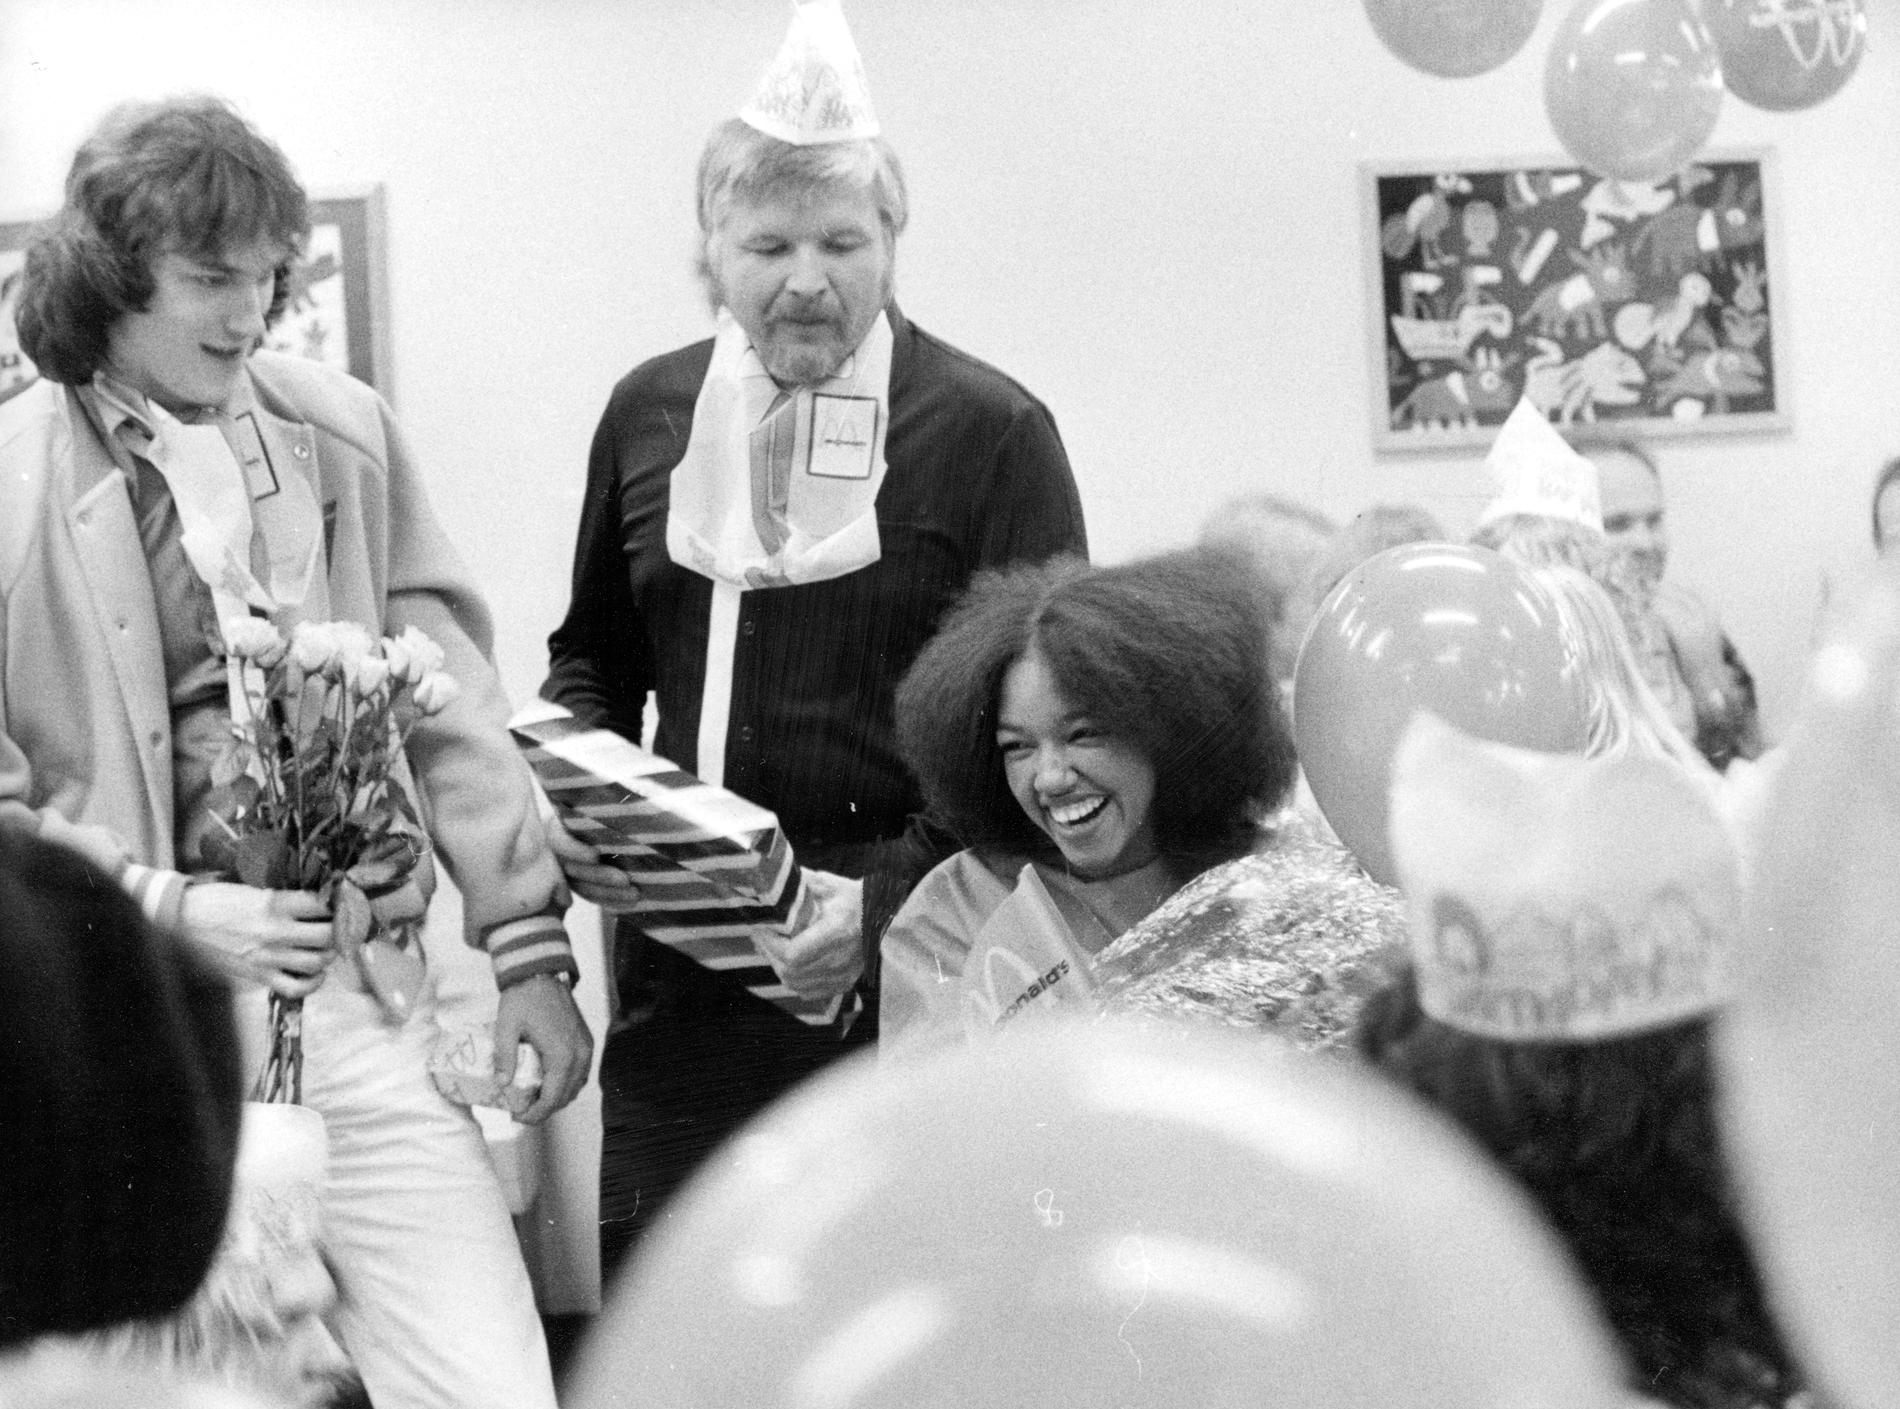 Gigi Hamilton firar sin 17-årsdag på McDonalds 1982